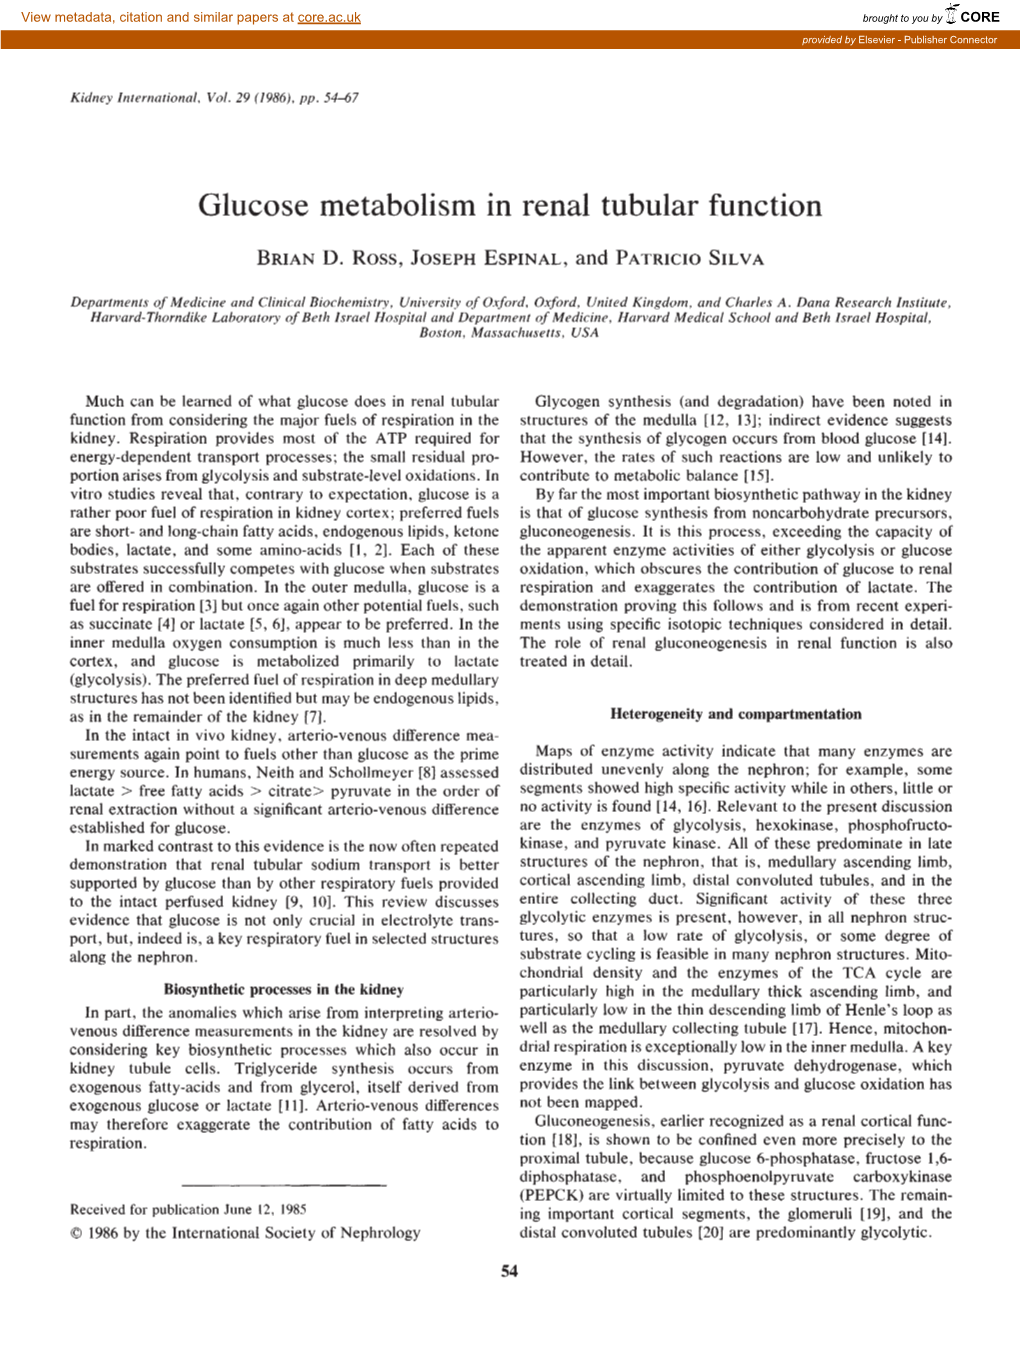 Glucose Metabolism in Renal Tubular Function